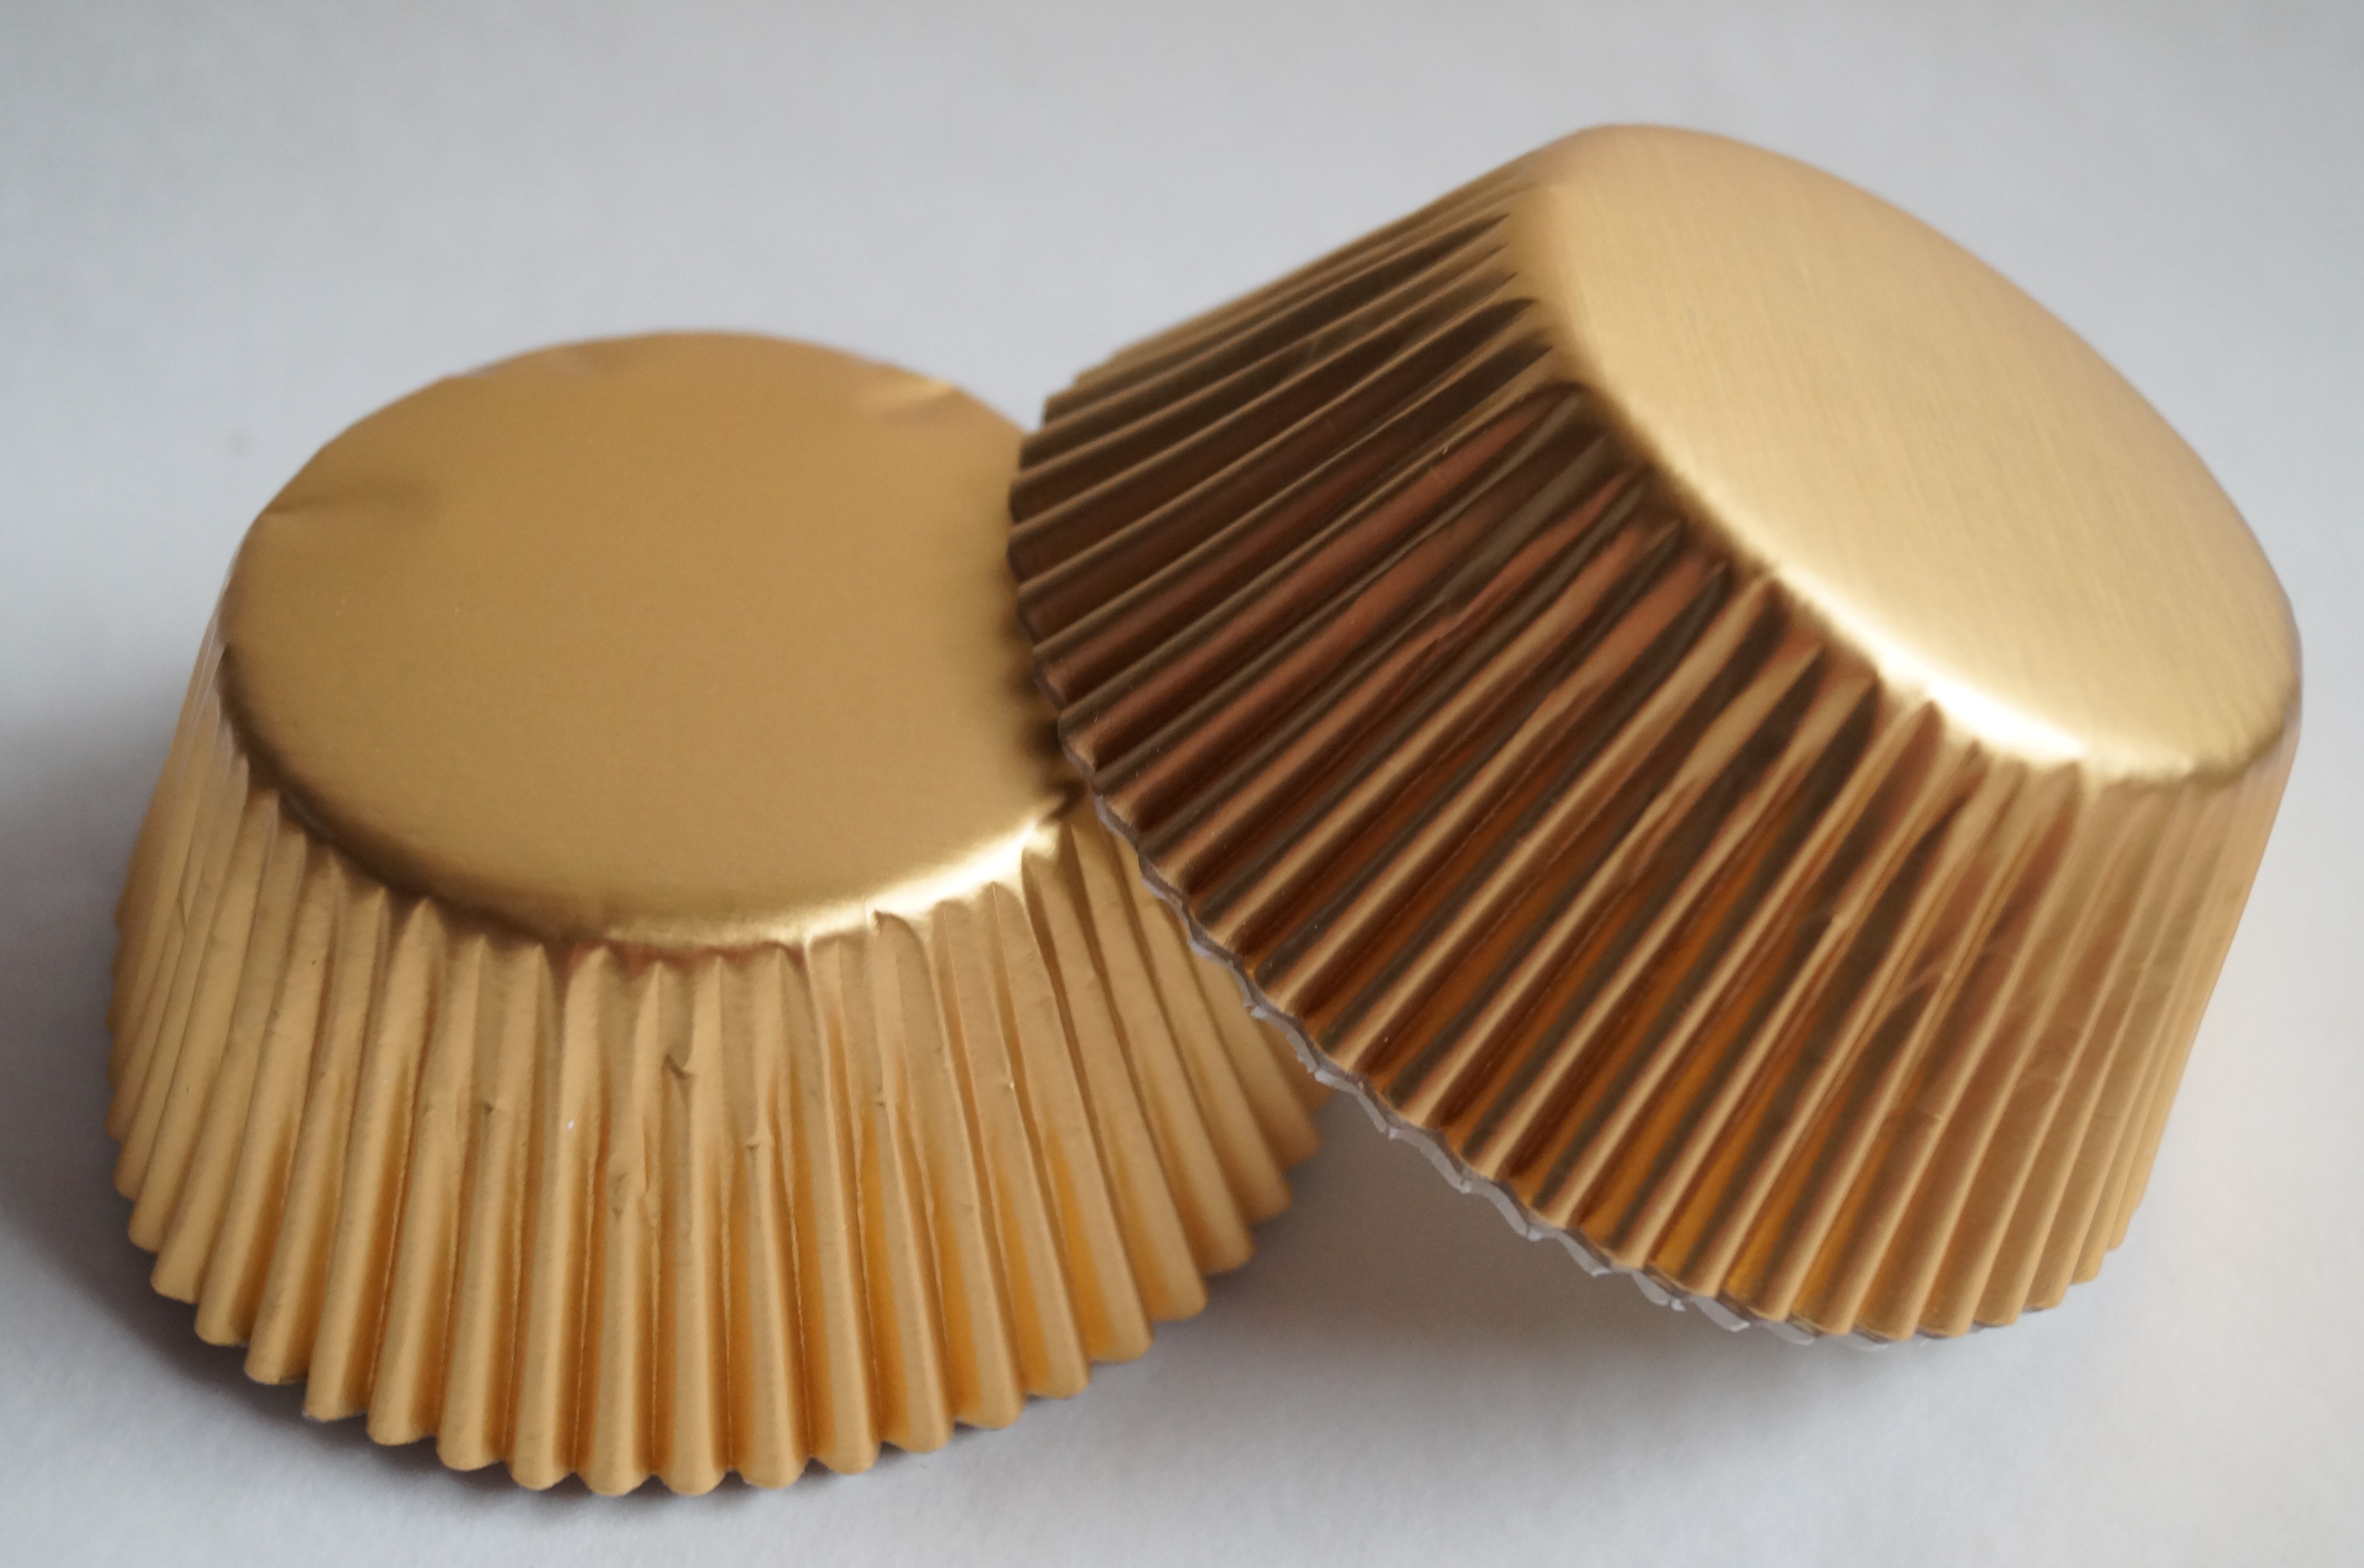 Papírové košíčky na muffiny - zlaté 48 ks